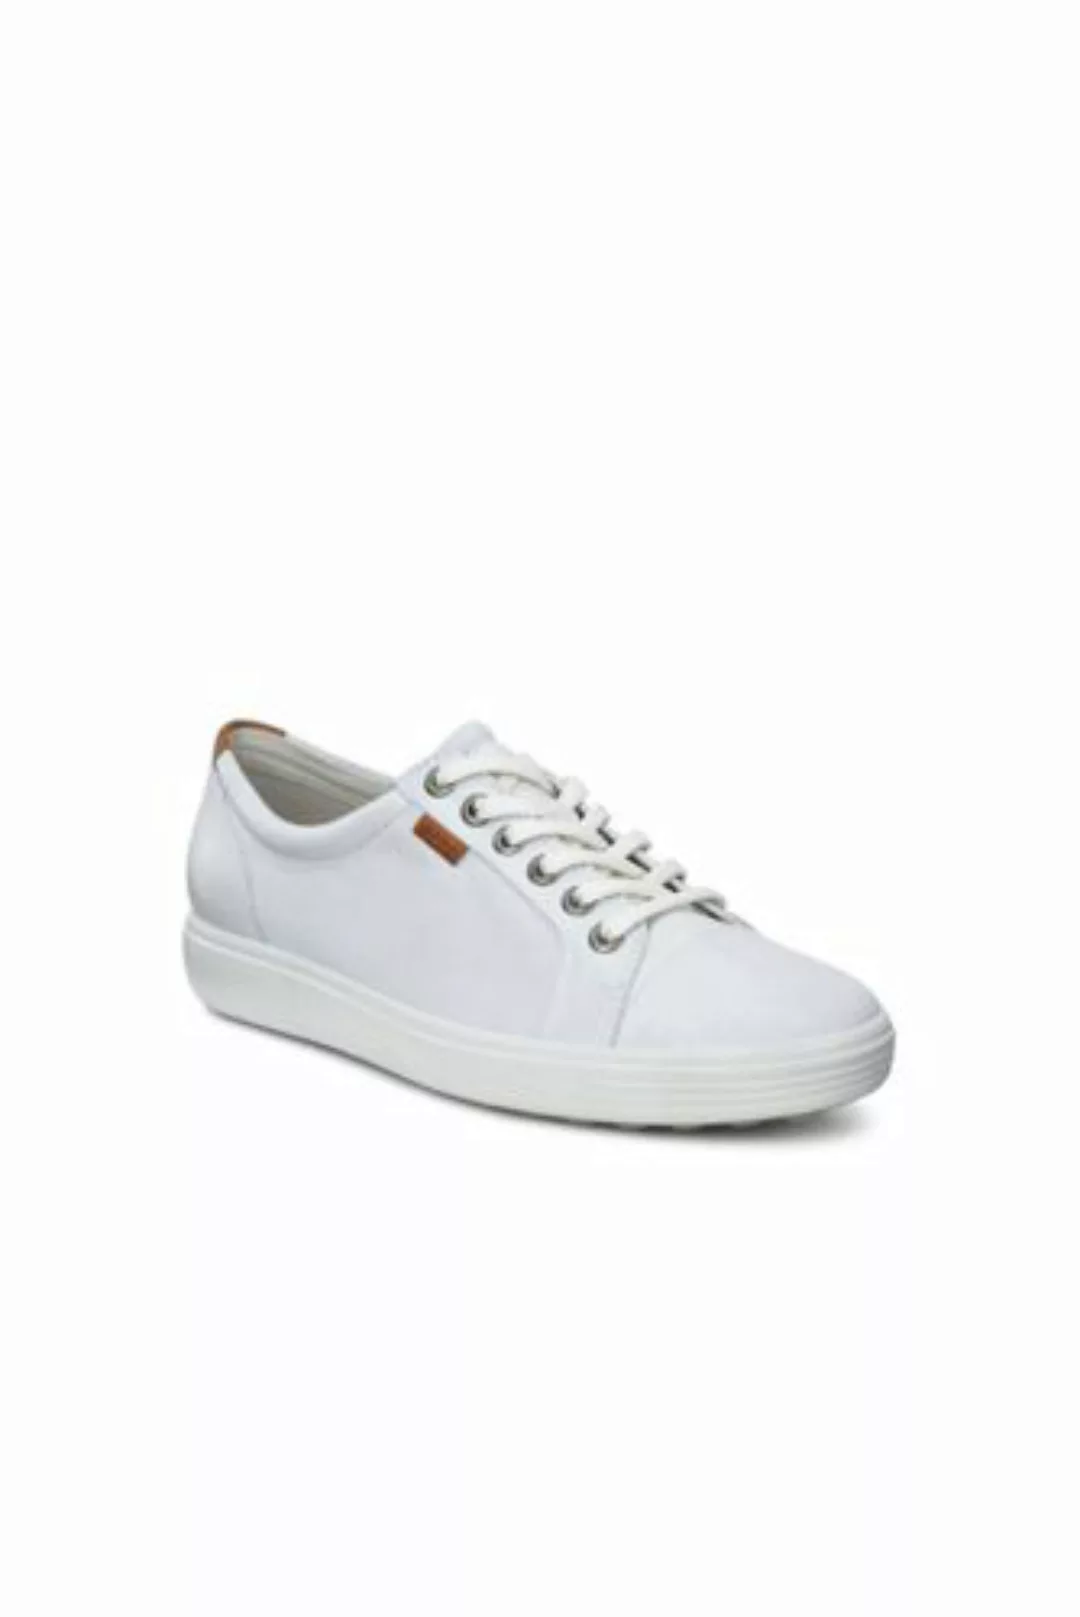 ECCO Sneaker SOFT 7, Damen, Größe: 39 Normal, Weiß, Leder, by Lands' End, W günstig online kaufen